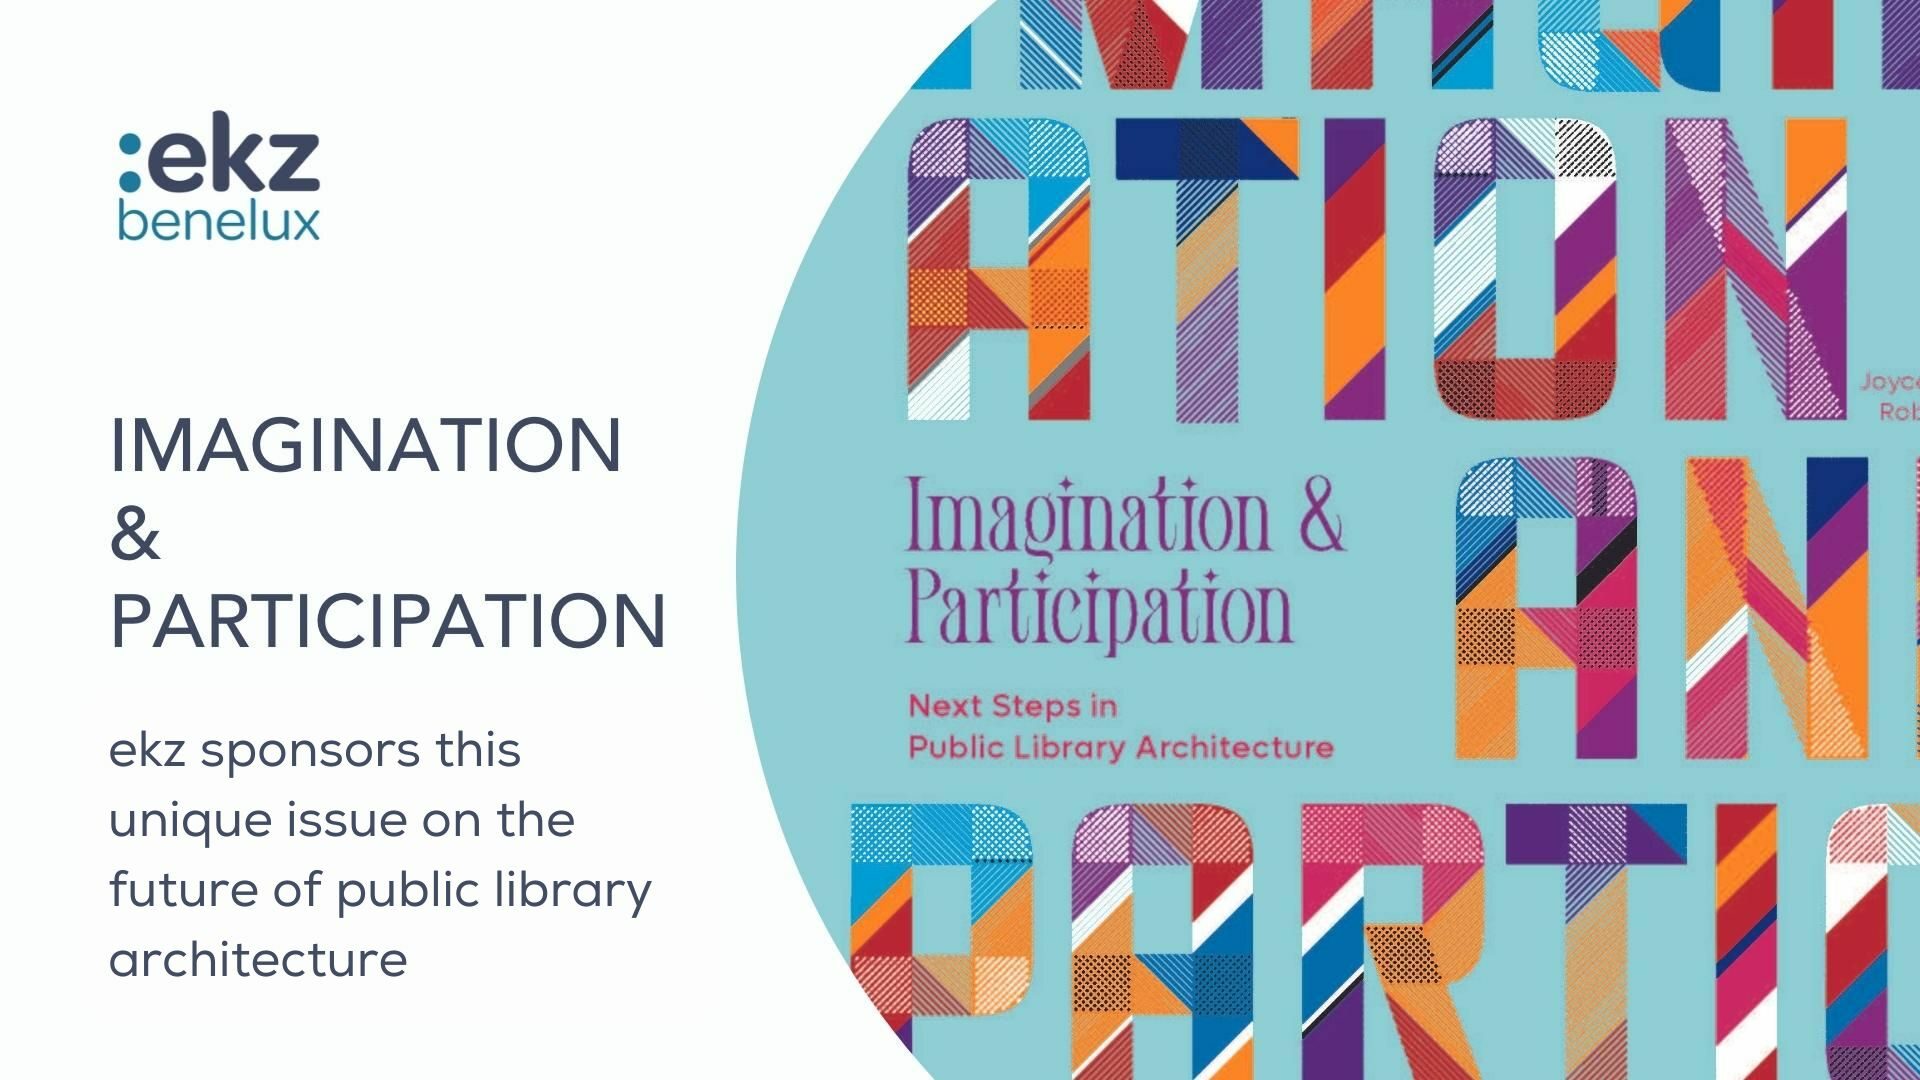 Imagination & Participation - ekz benelux